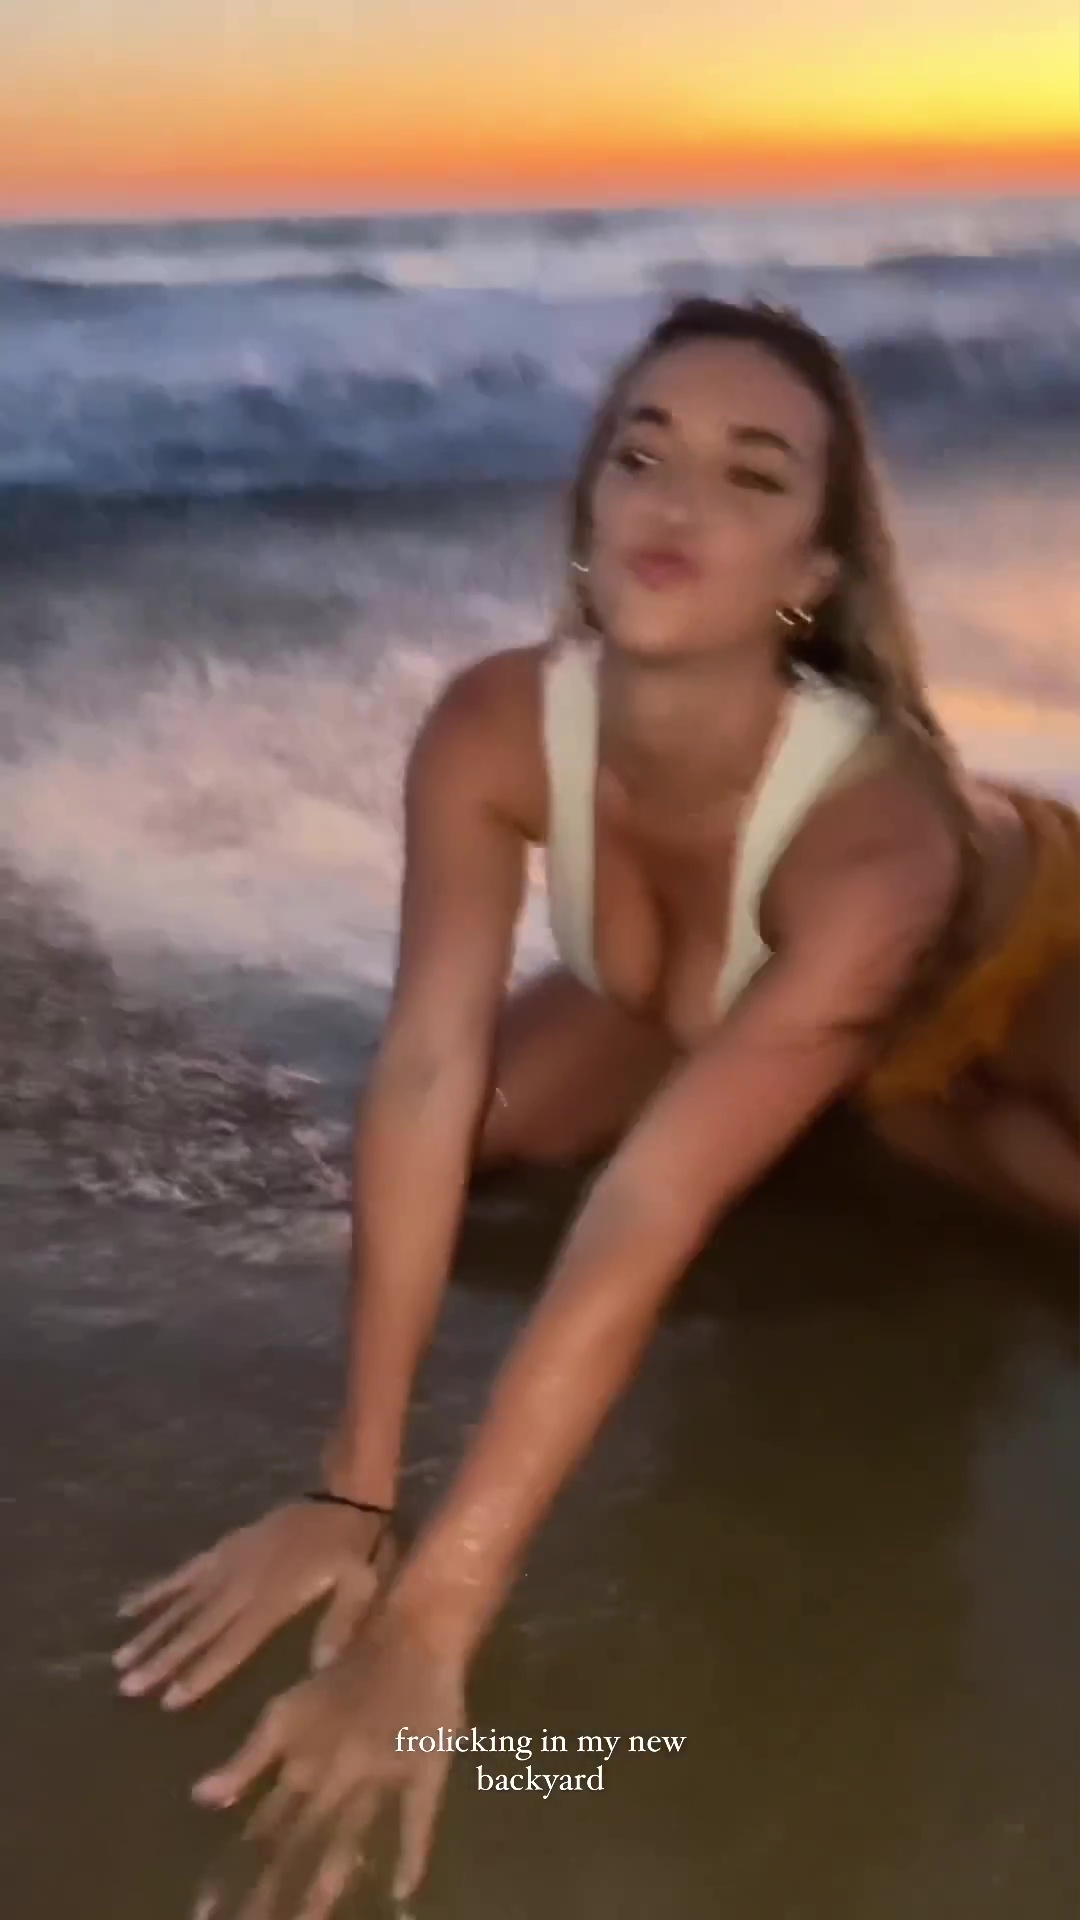 Kayla hat einen Videoclip von sich am Strand gepostet